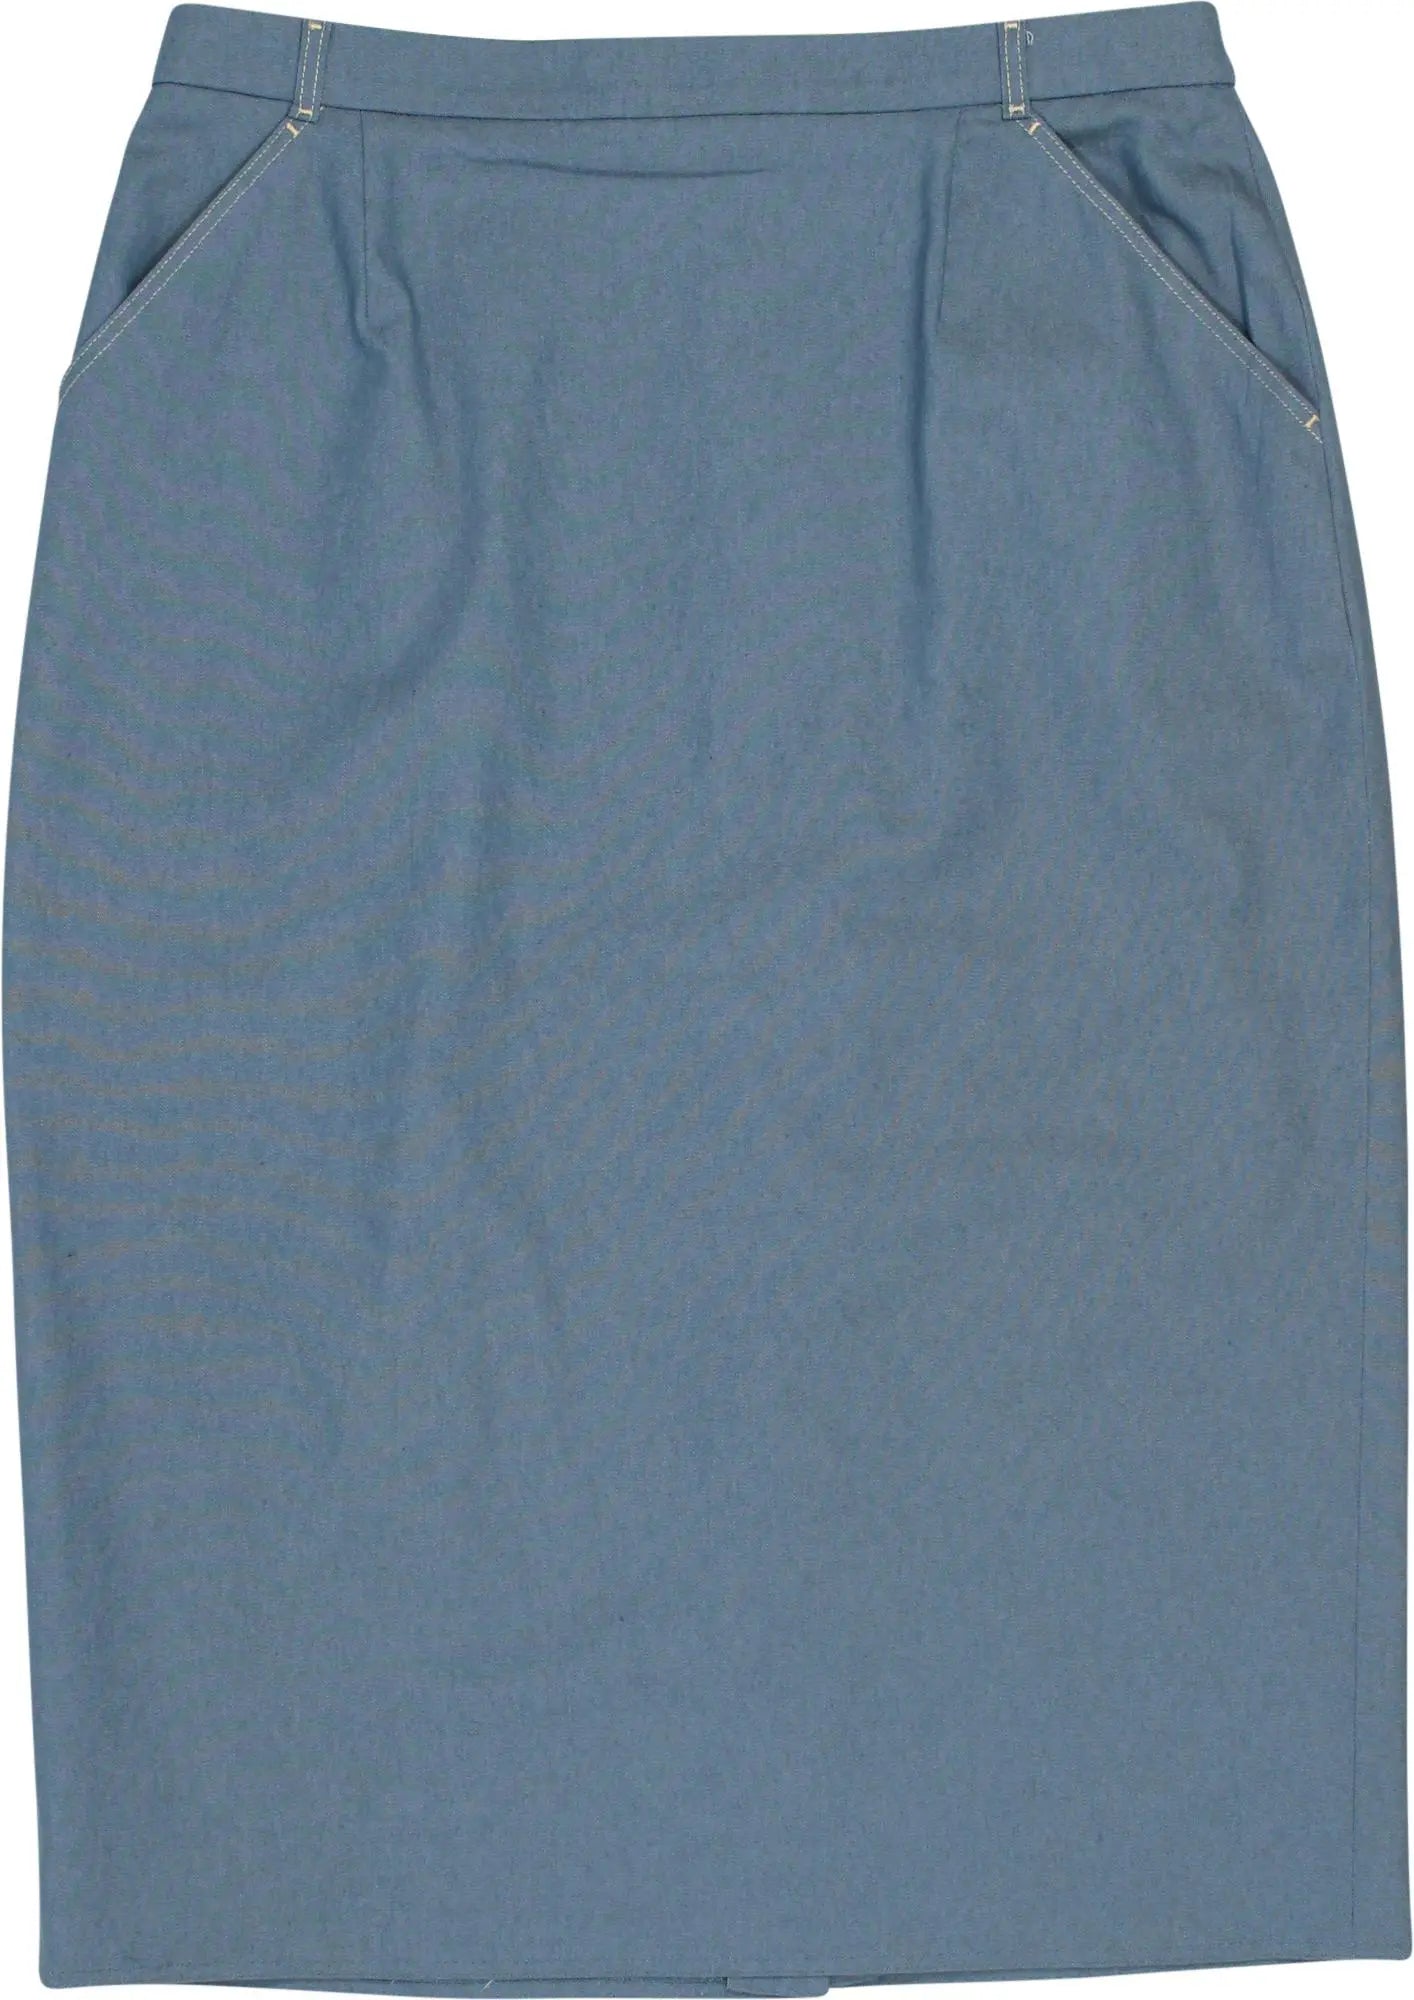 Frankenwälder - 90s Midi Skirt- ThriftTale.com - Vintage and second handclothing